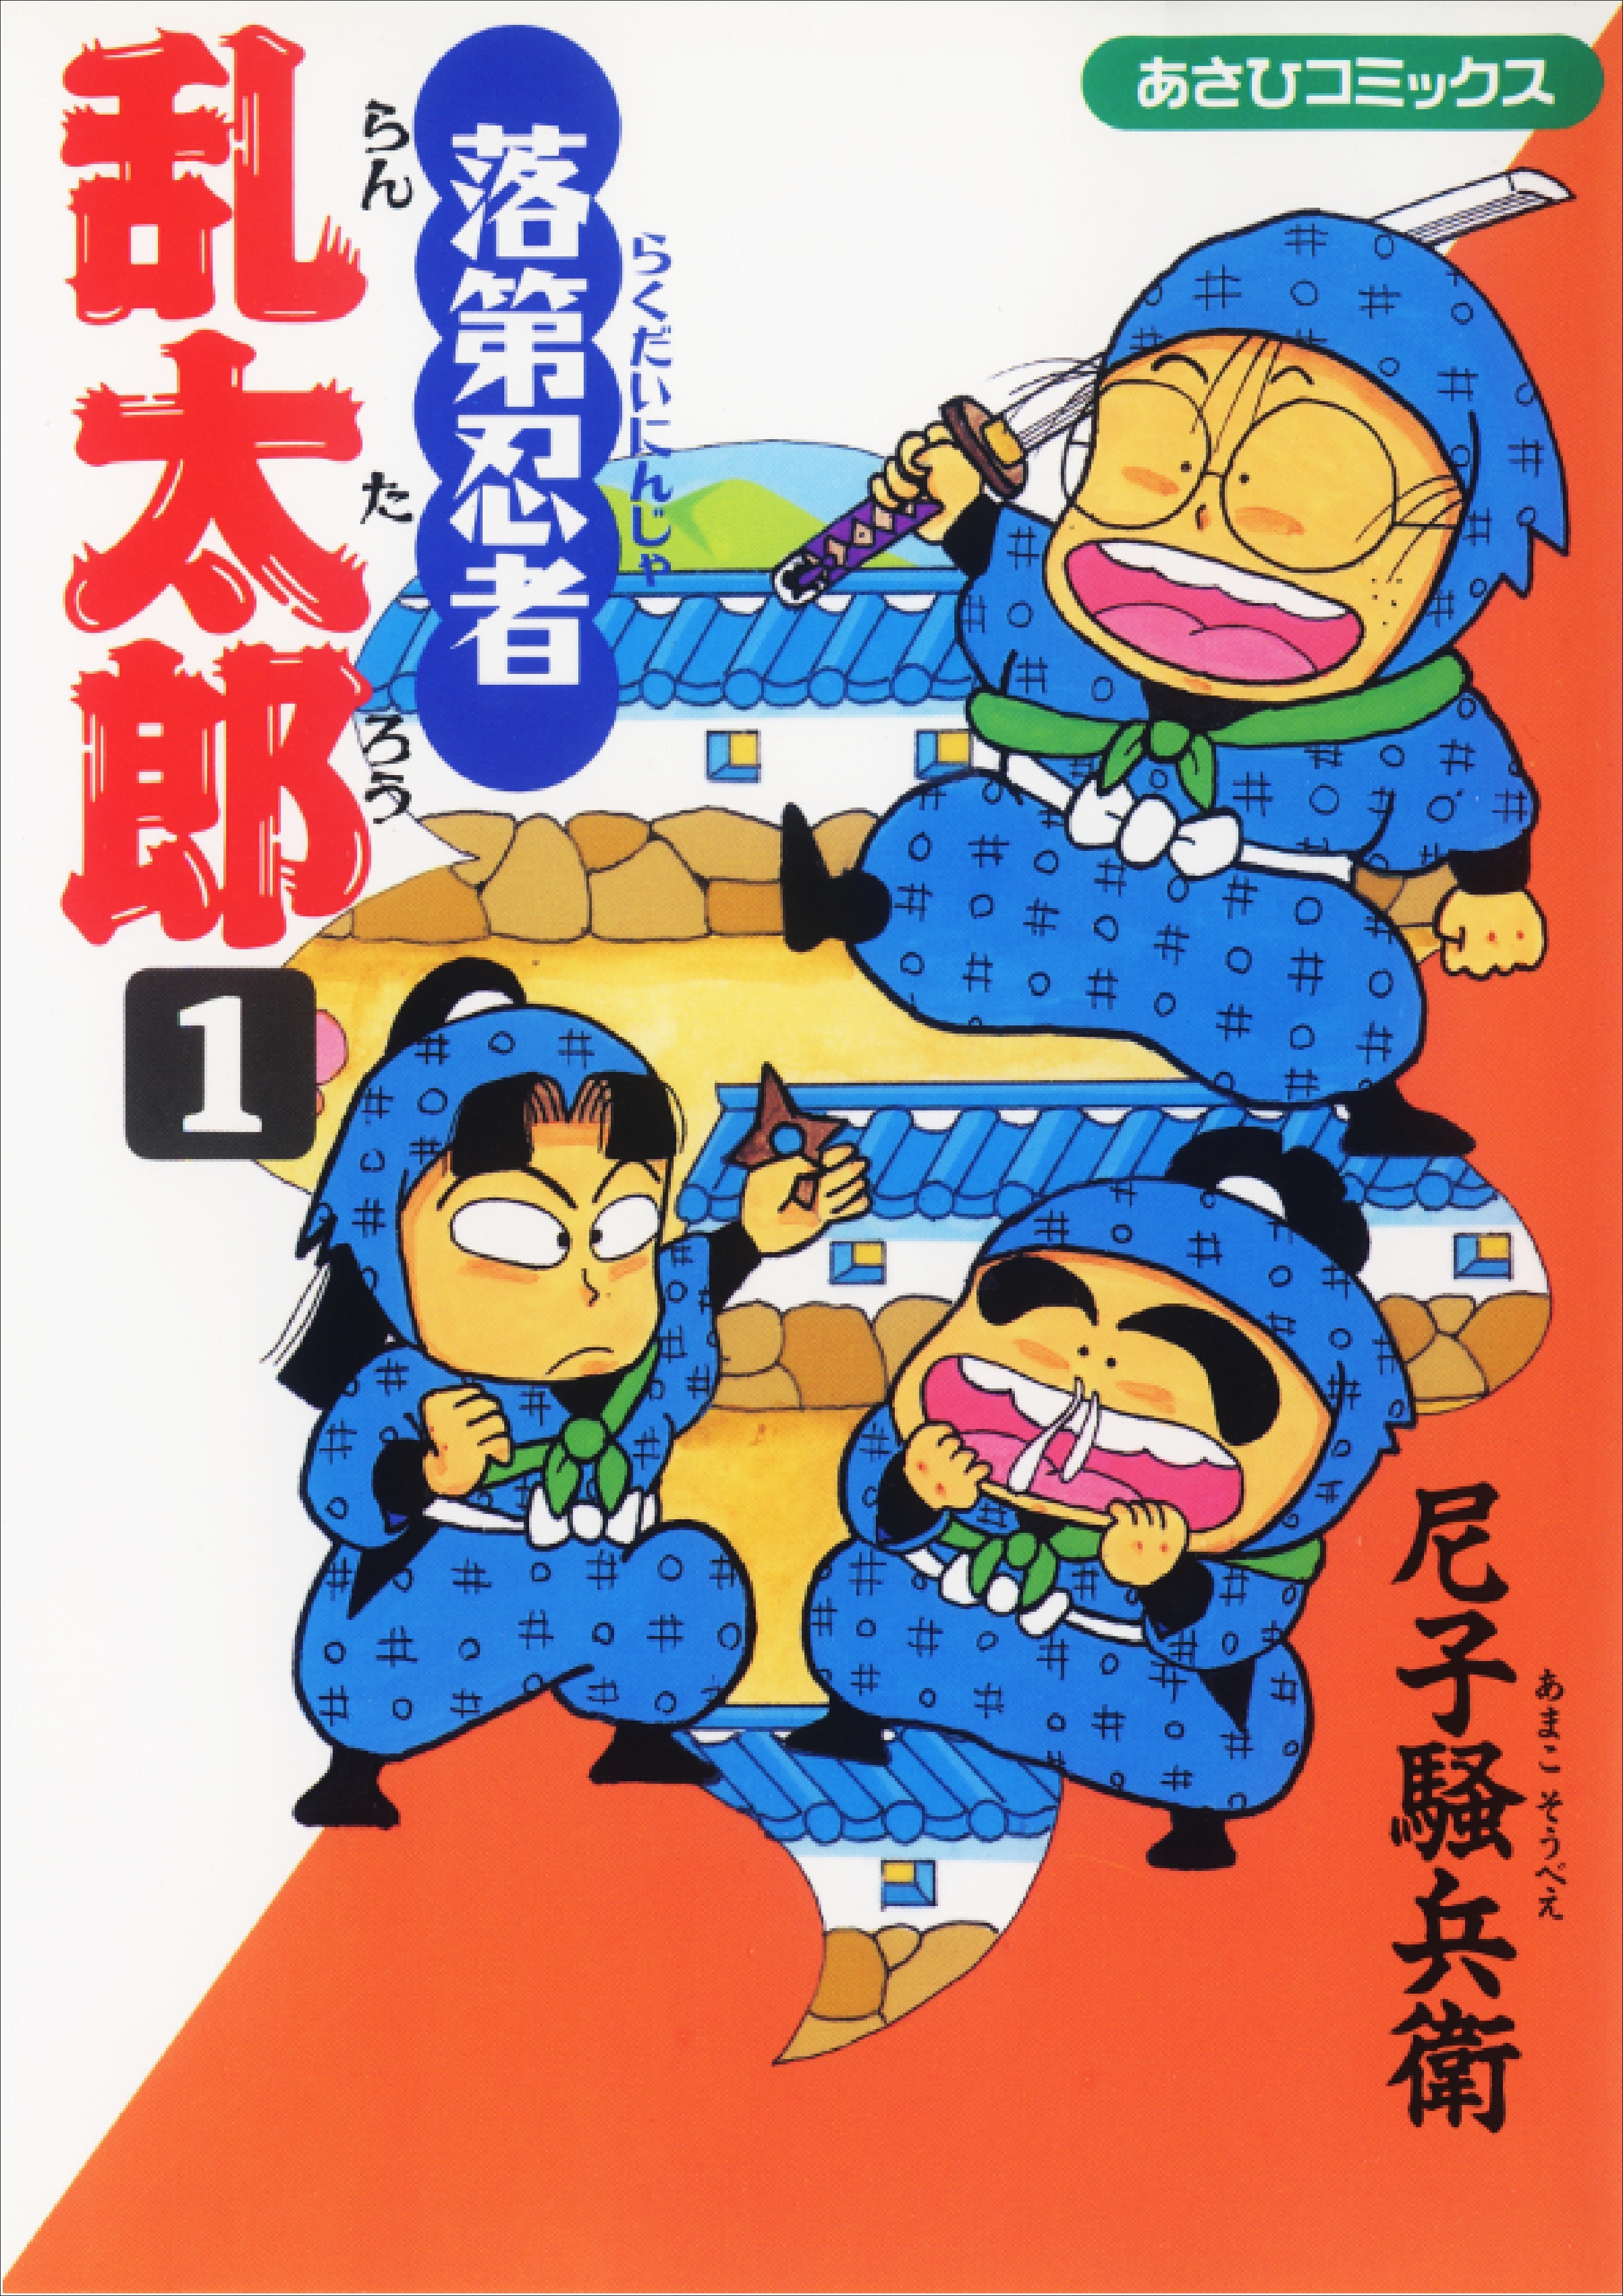 ありがとう忍たま 19年11月 65巻で完結 漫画 落第忍者乱太郎 和樂web 日本文化の入り口マガジン